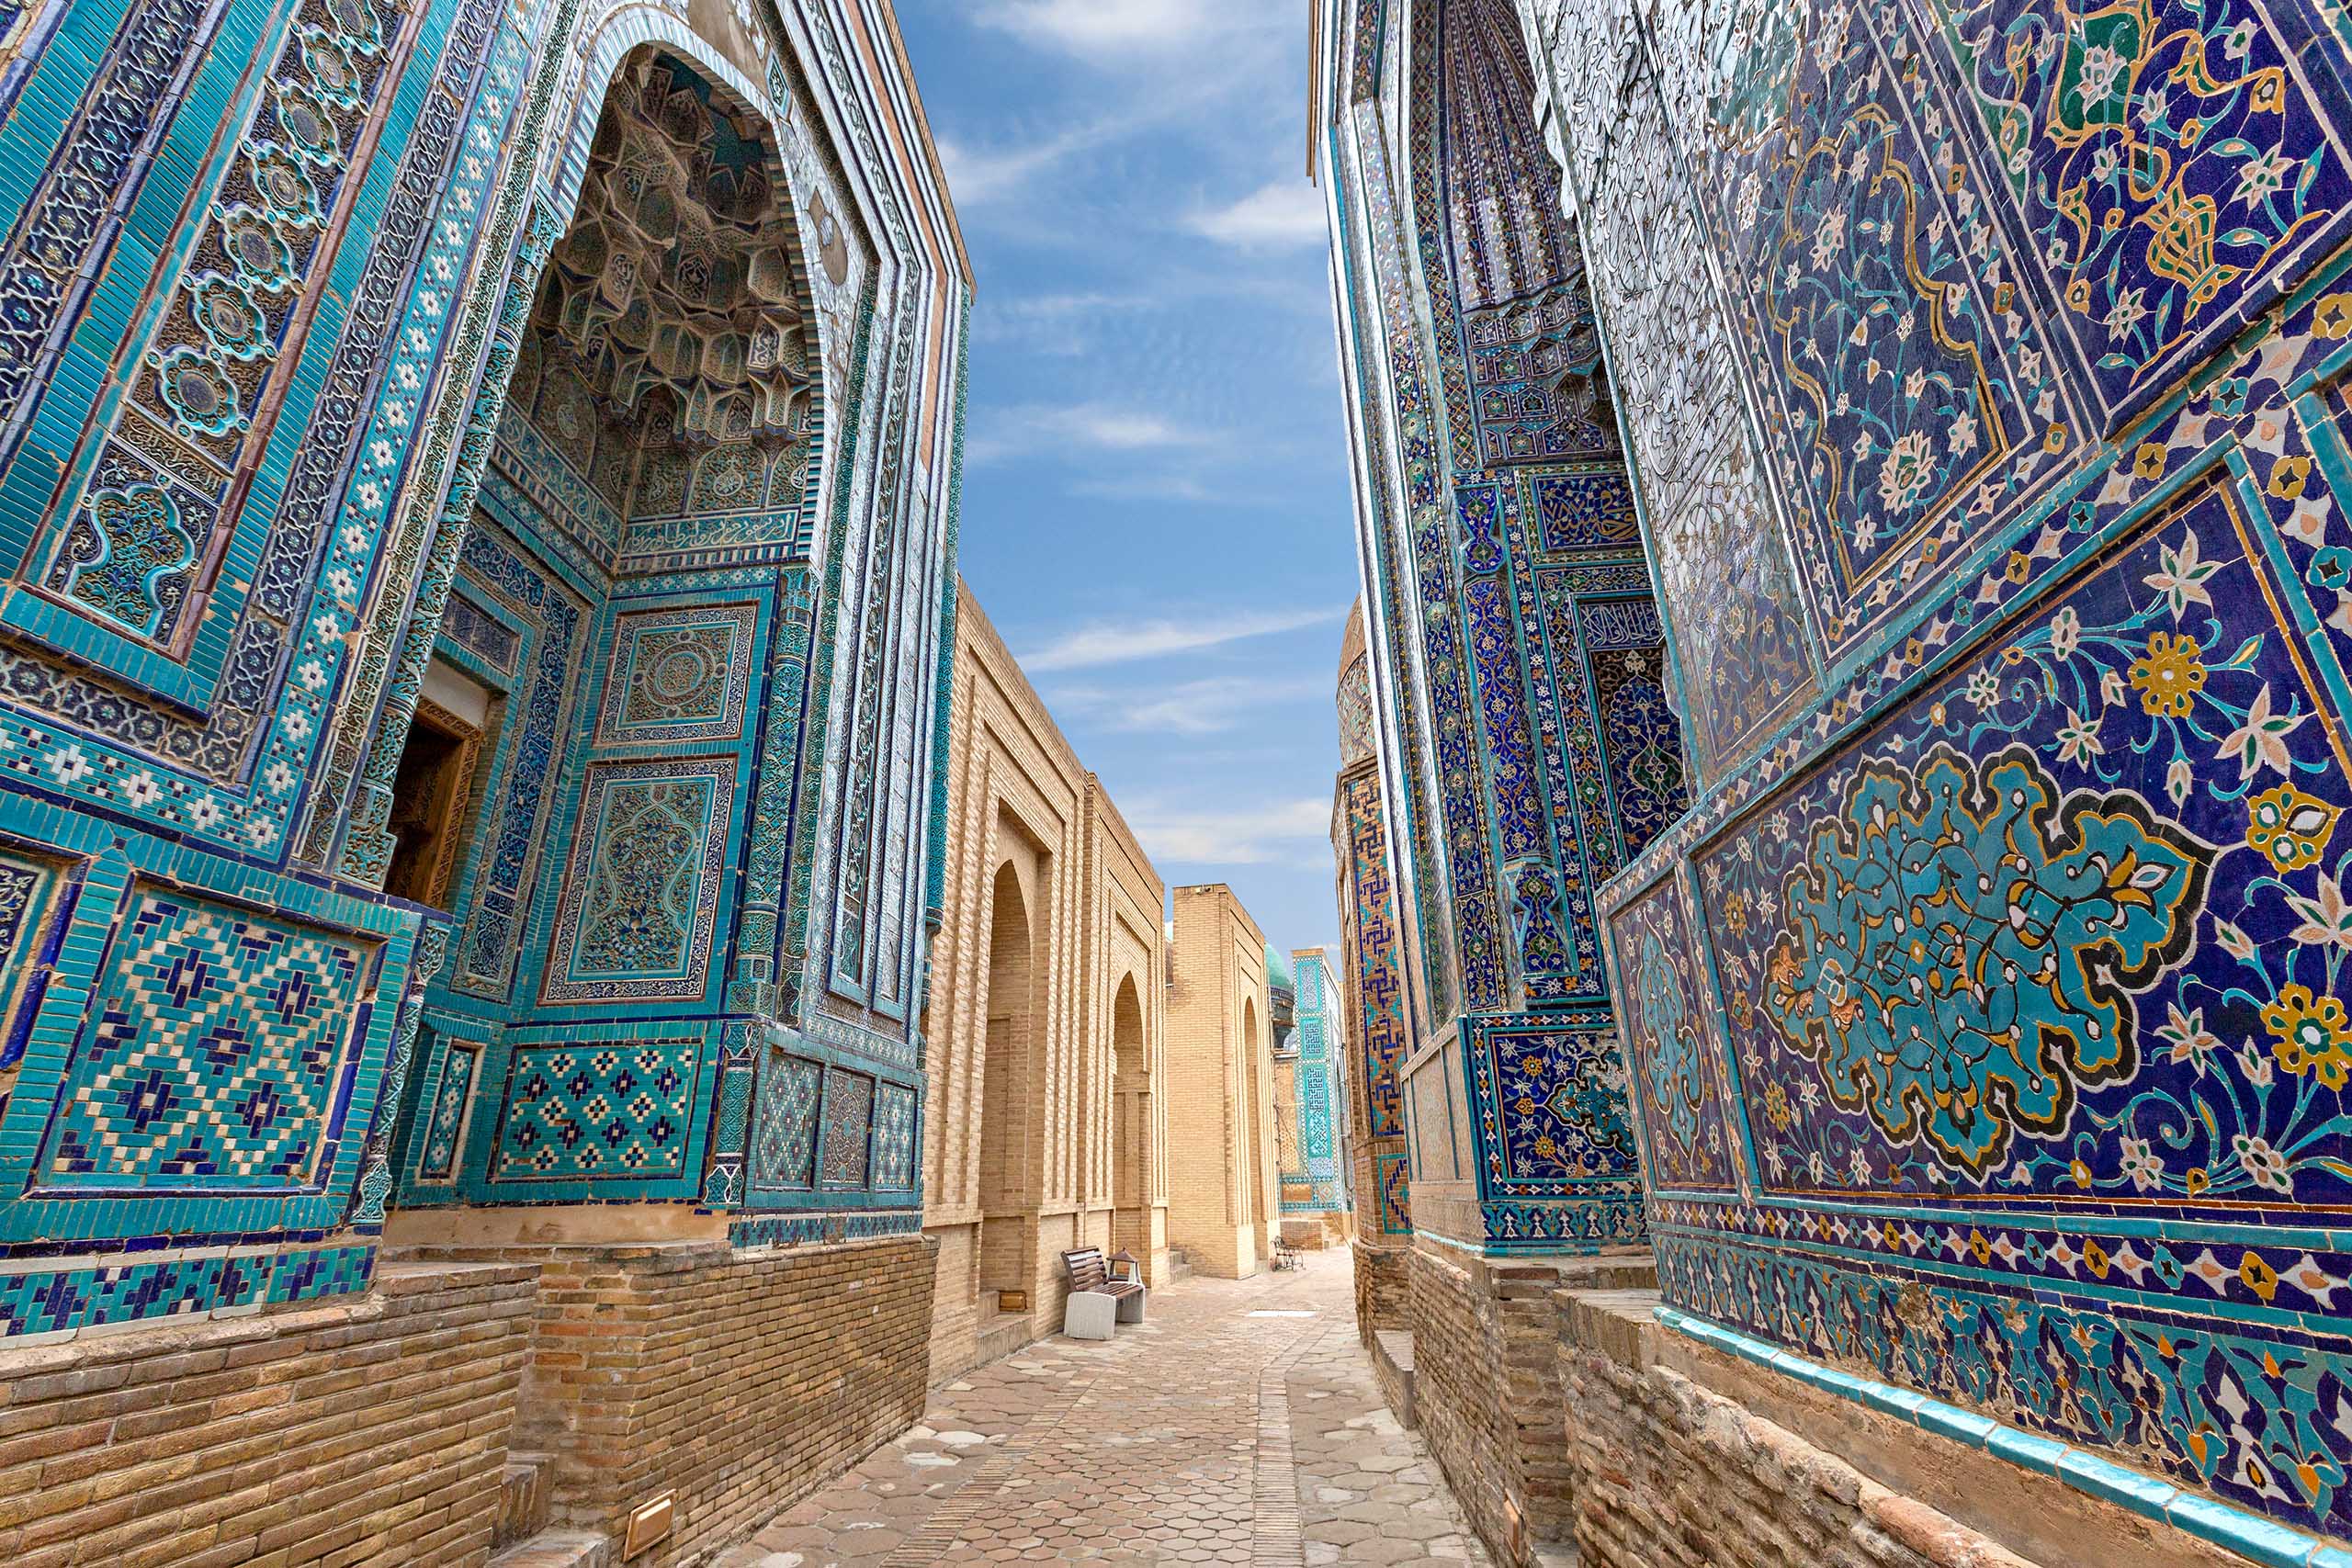 Historical necropolis and mausoleums of Shakhi Zinda, Samarkand, Uzbekistan.